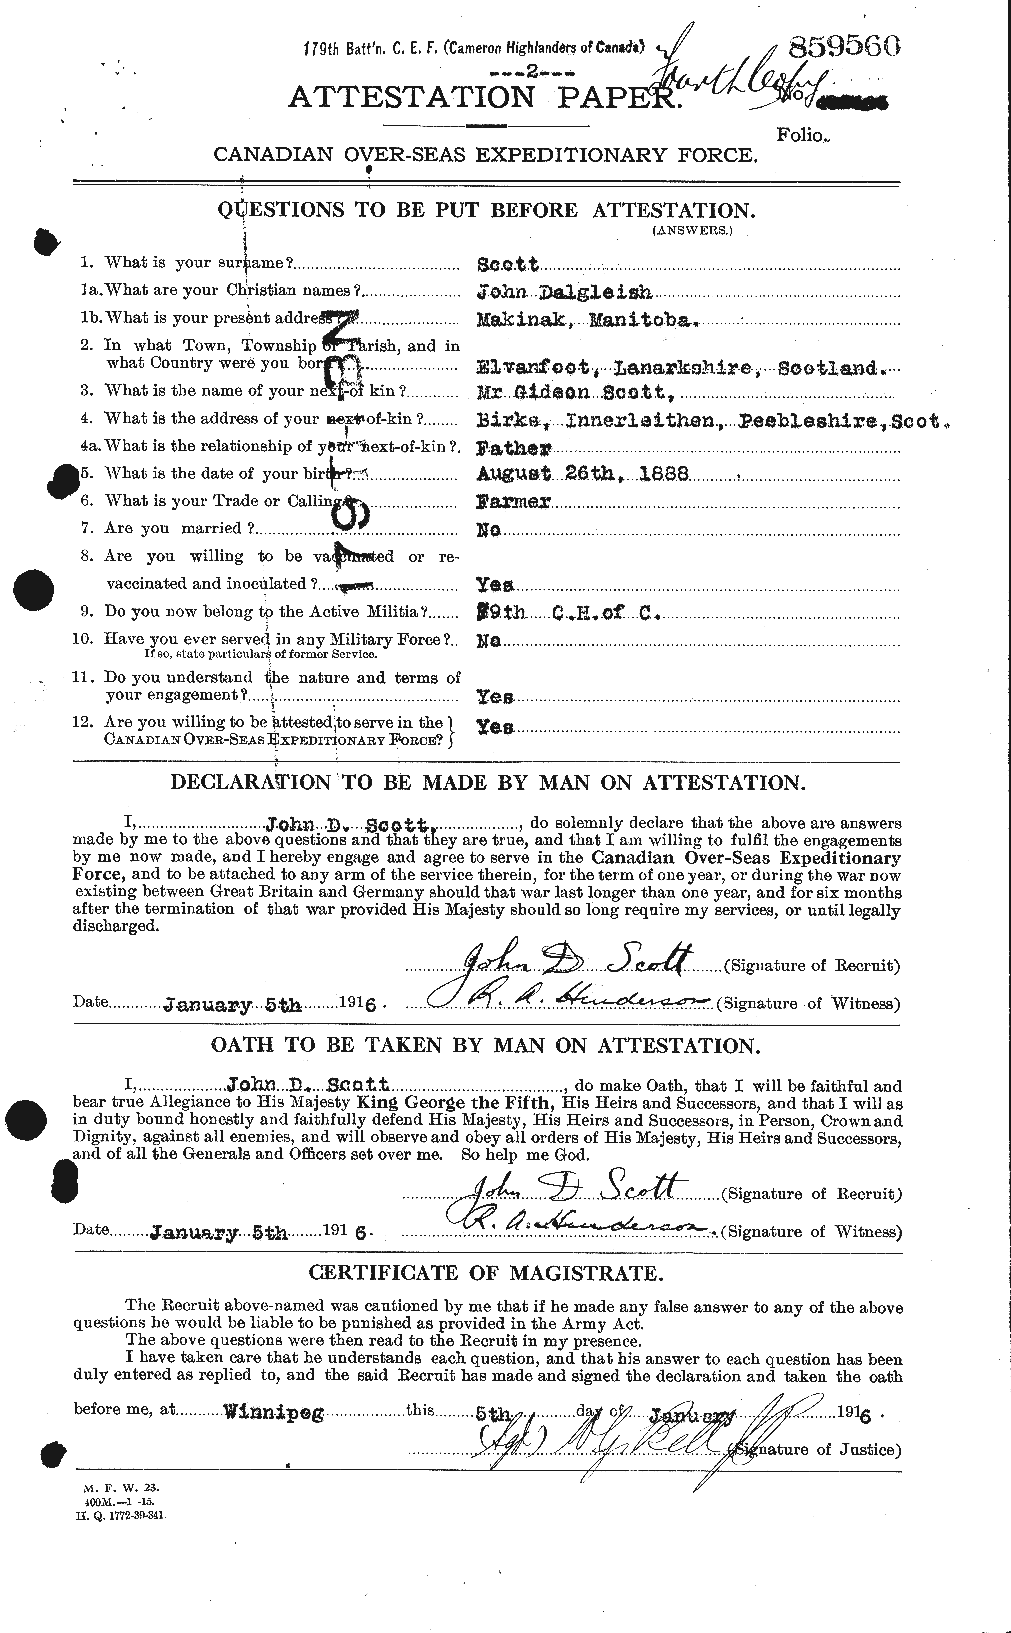 Dossiers du Personnel de la Première Guerre mondiale - CEC 084644a